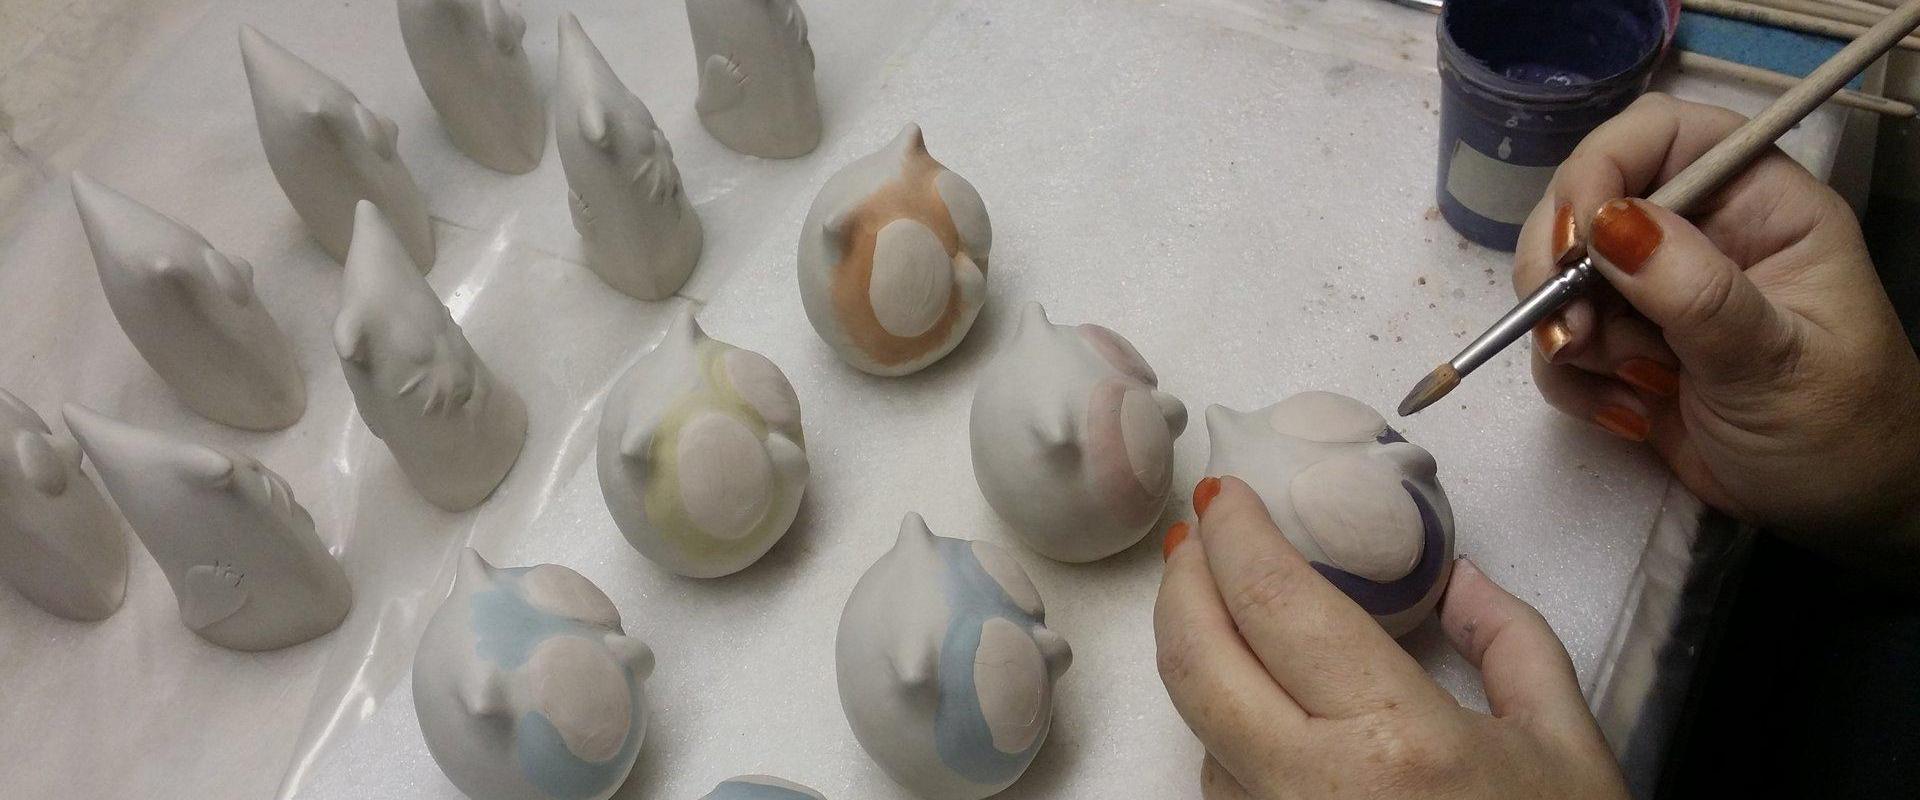 handmade-estonian-ceramics-kunstnik-painter